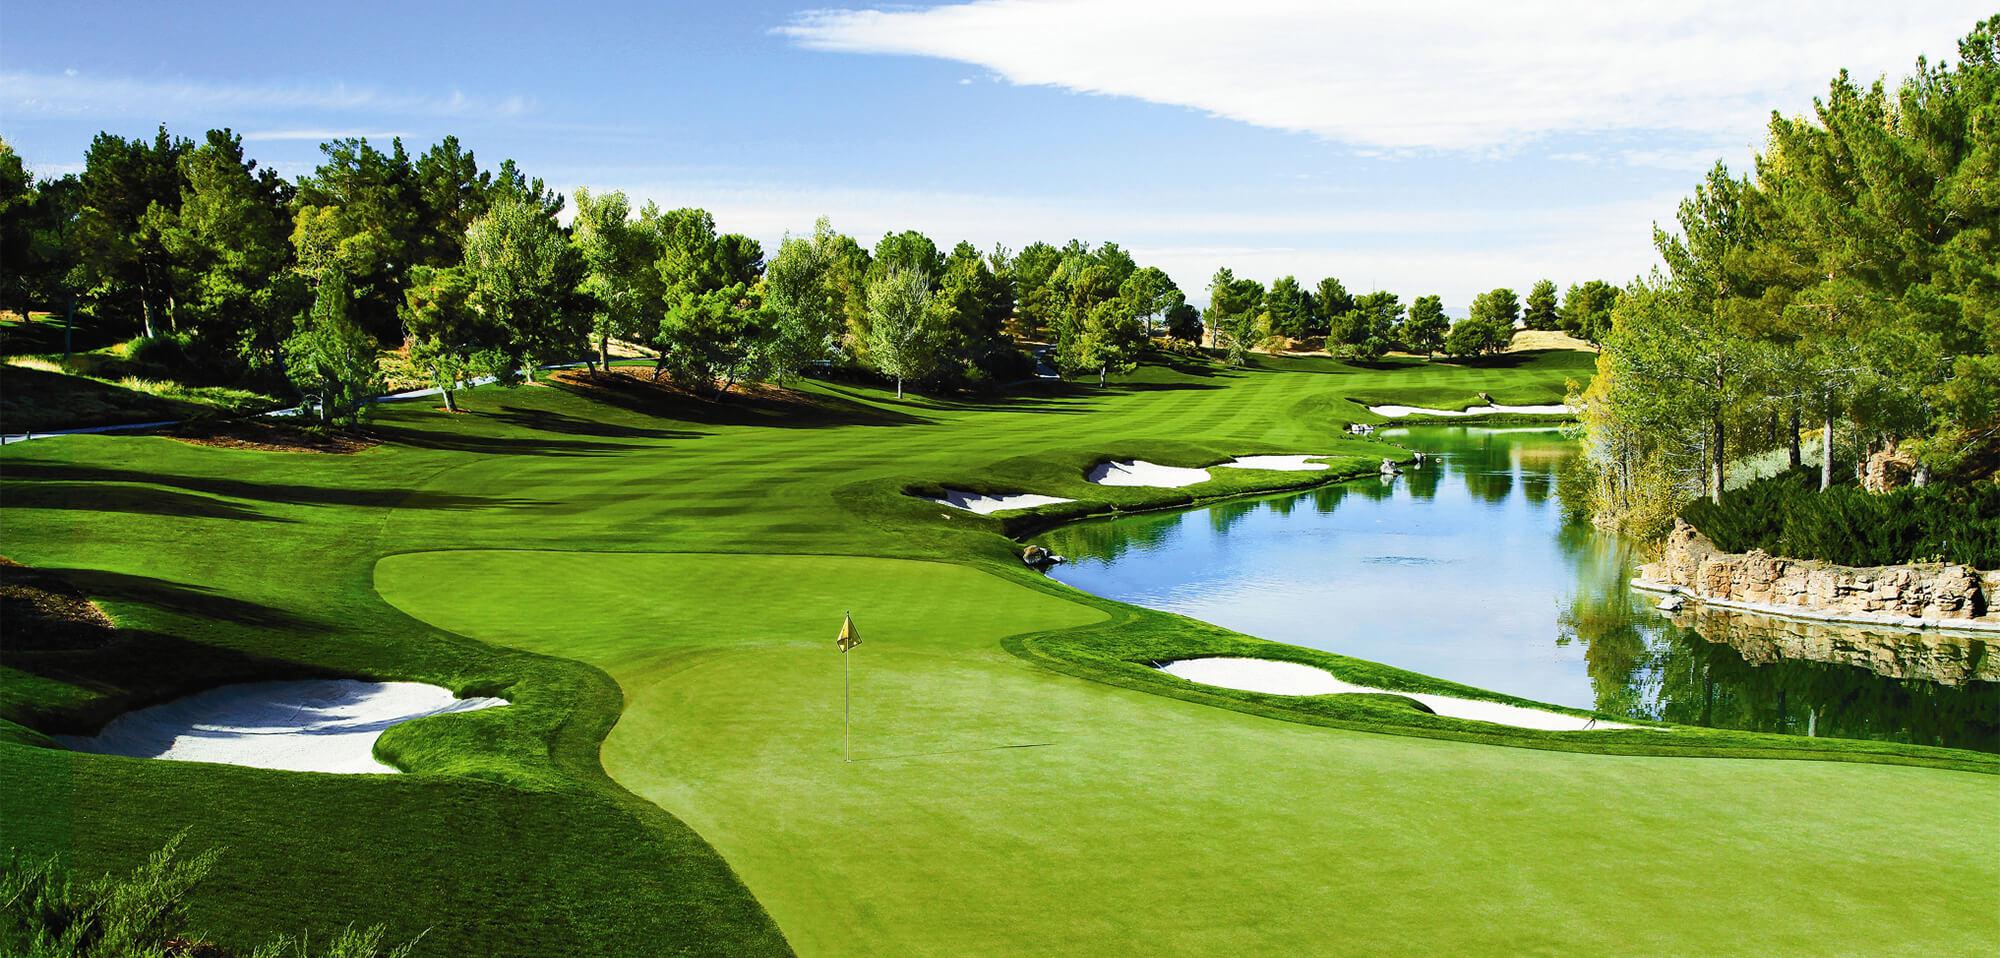 Sân Golf FLC Hạ Long 18 hố cho khách quần thể khách sạn